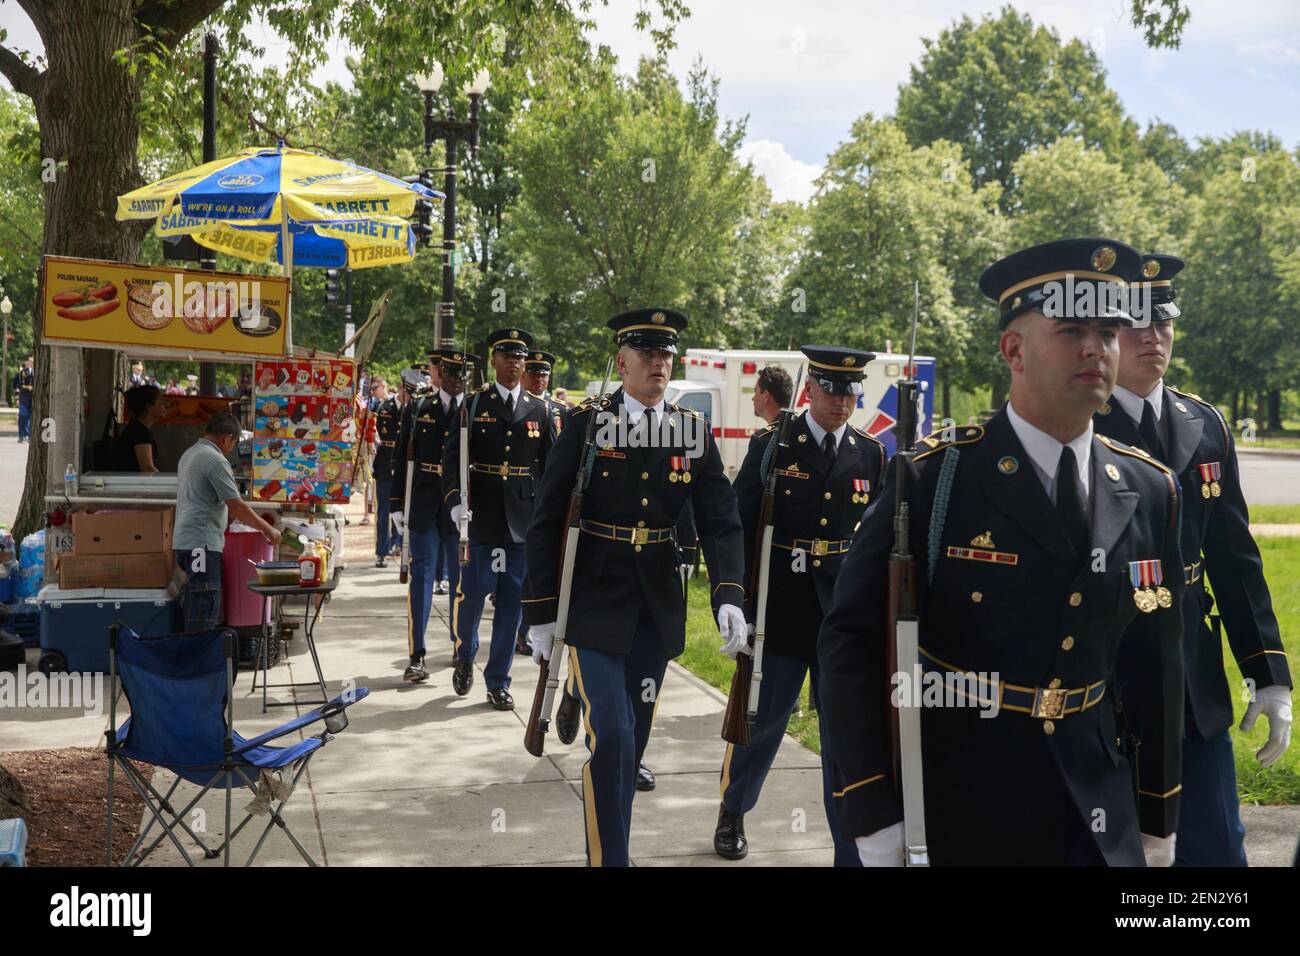 Les membres de la garde d'honneur de l'armée des États-Unis marchent pendant la parade du jour commémoratif national à Washington DC. (Photo de Jeremy Hogan / SOPA Images / Sipa USA) Banque D'Images